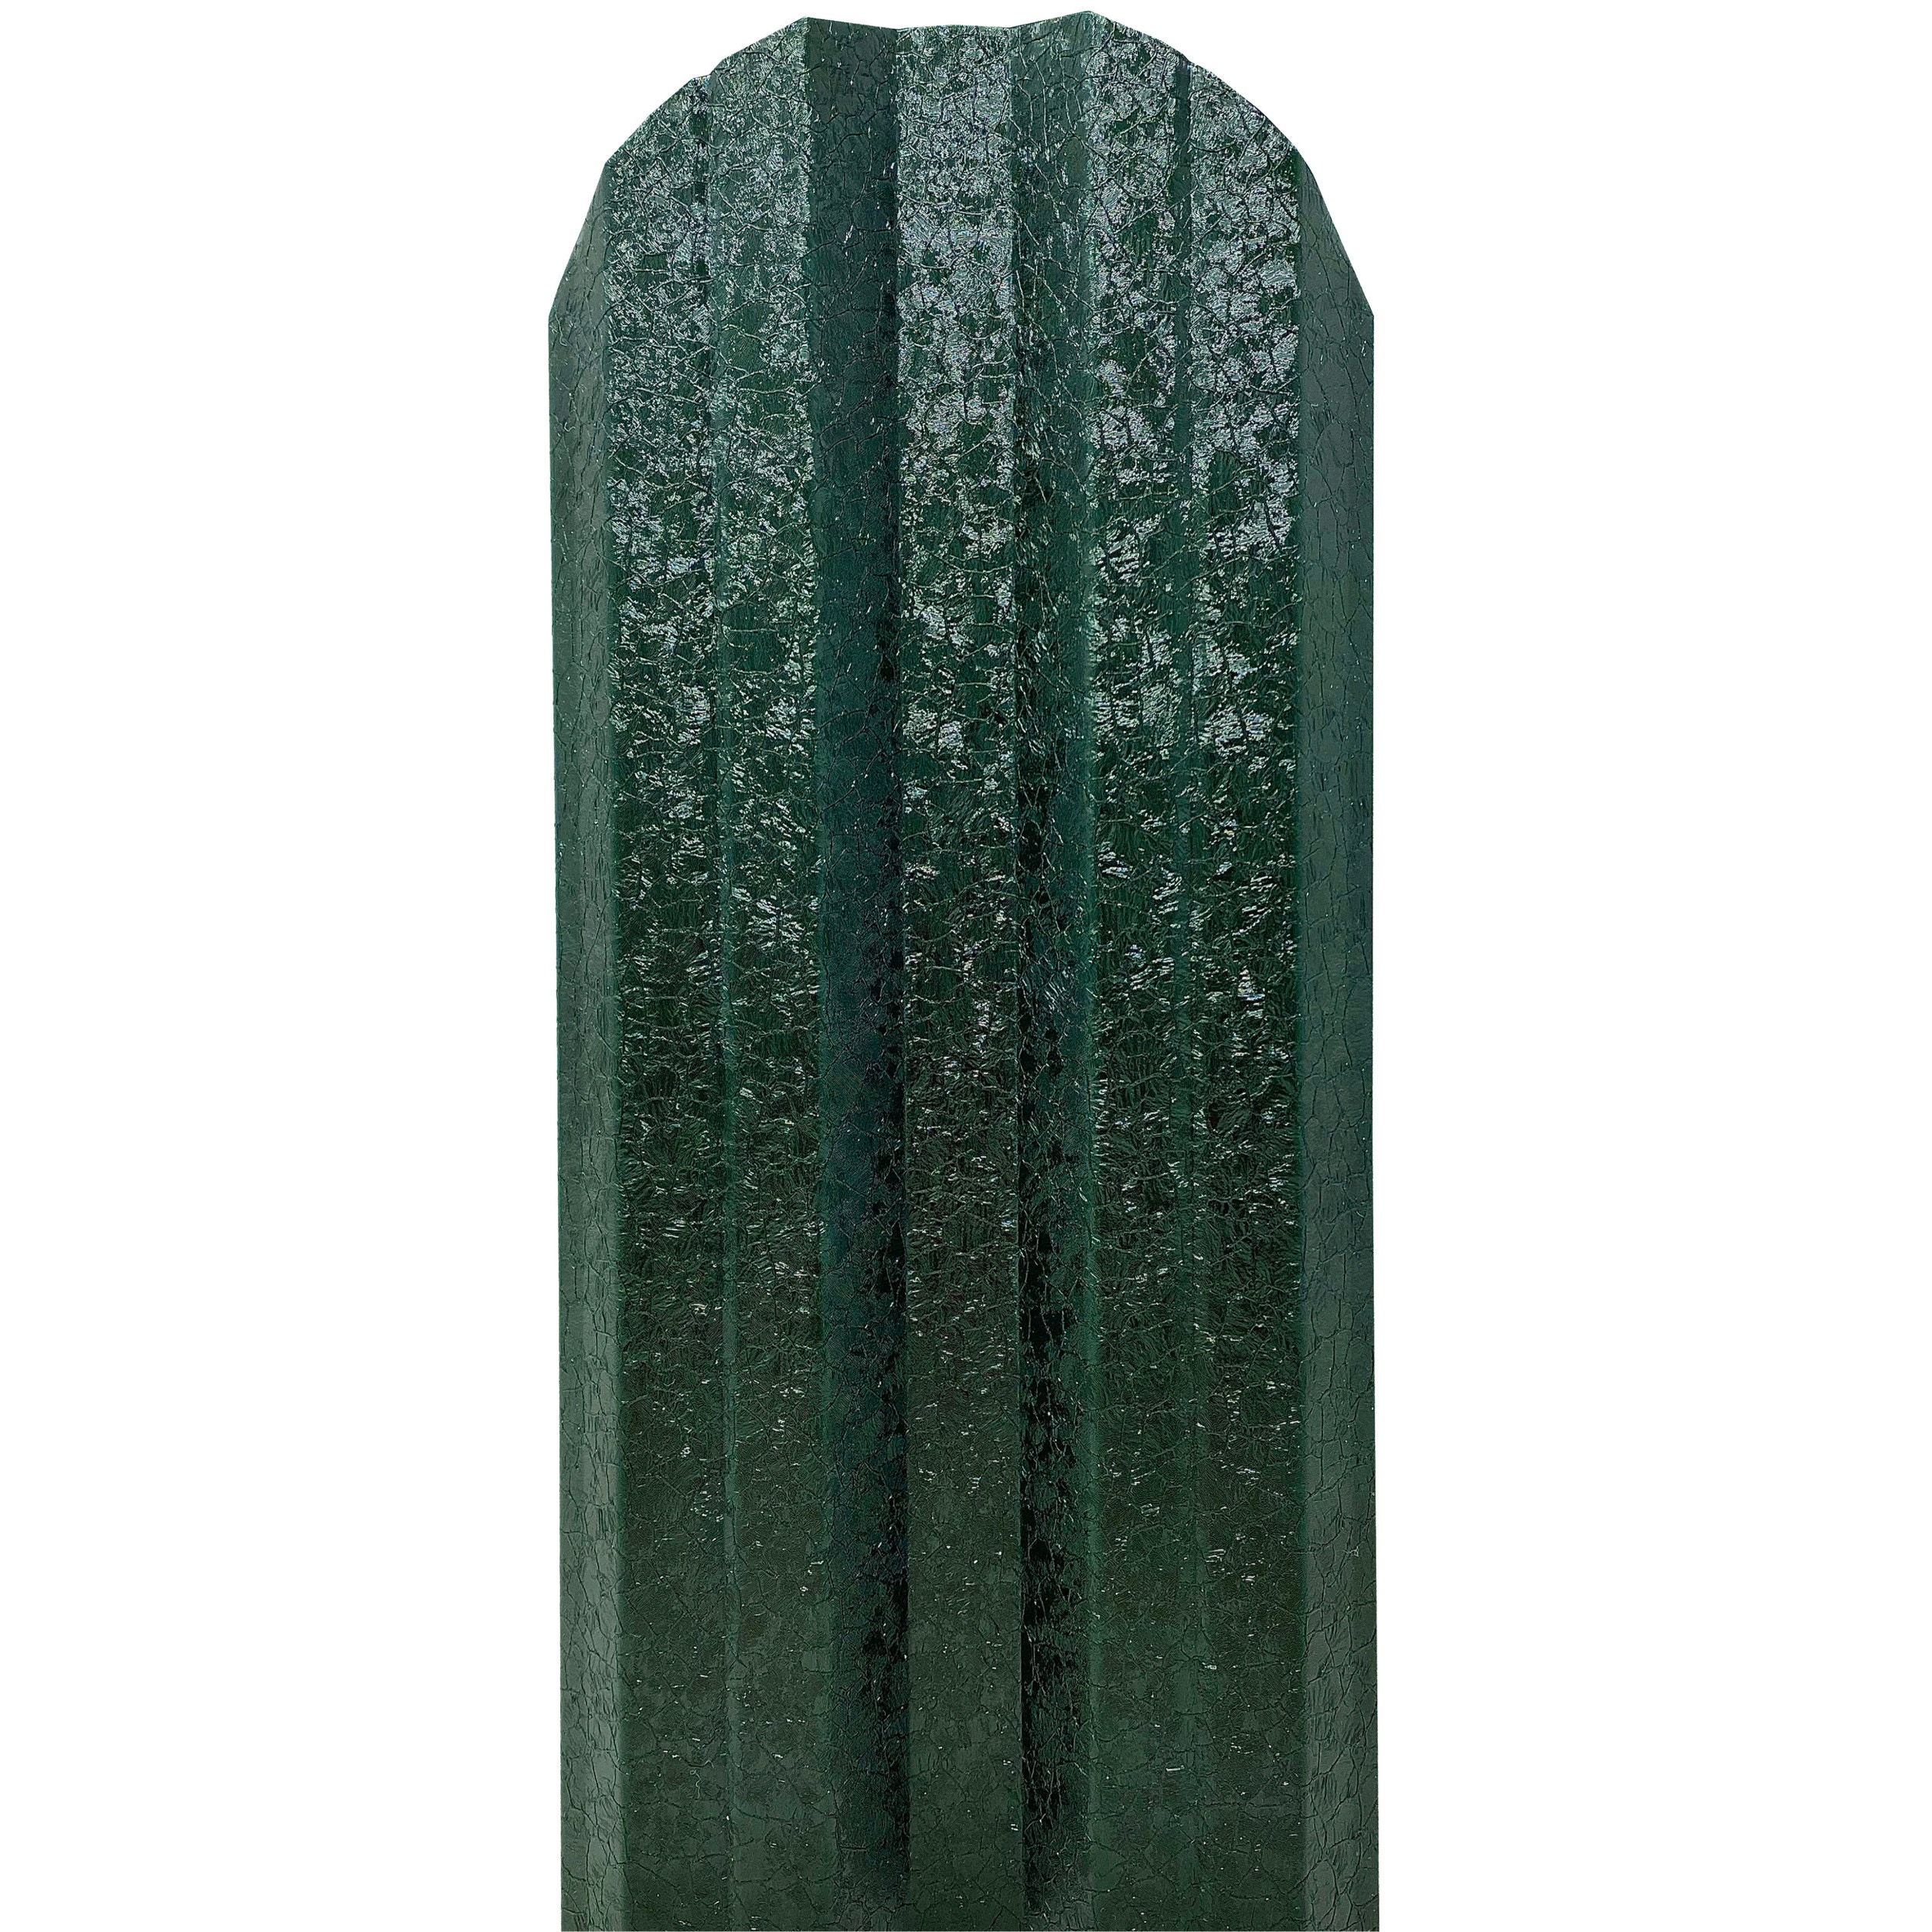 Sipca metalica cutata pentru gard, verde / RAL 6005, 1300 x 115 x 0.5 mm, set 25 bucati + 50 bucati surub autoforant